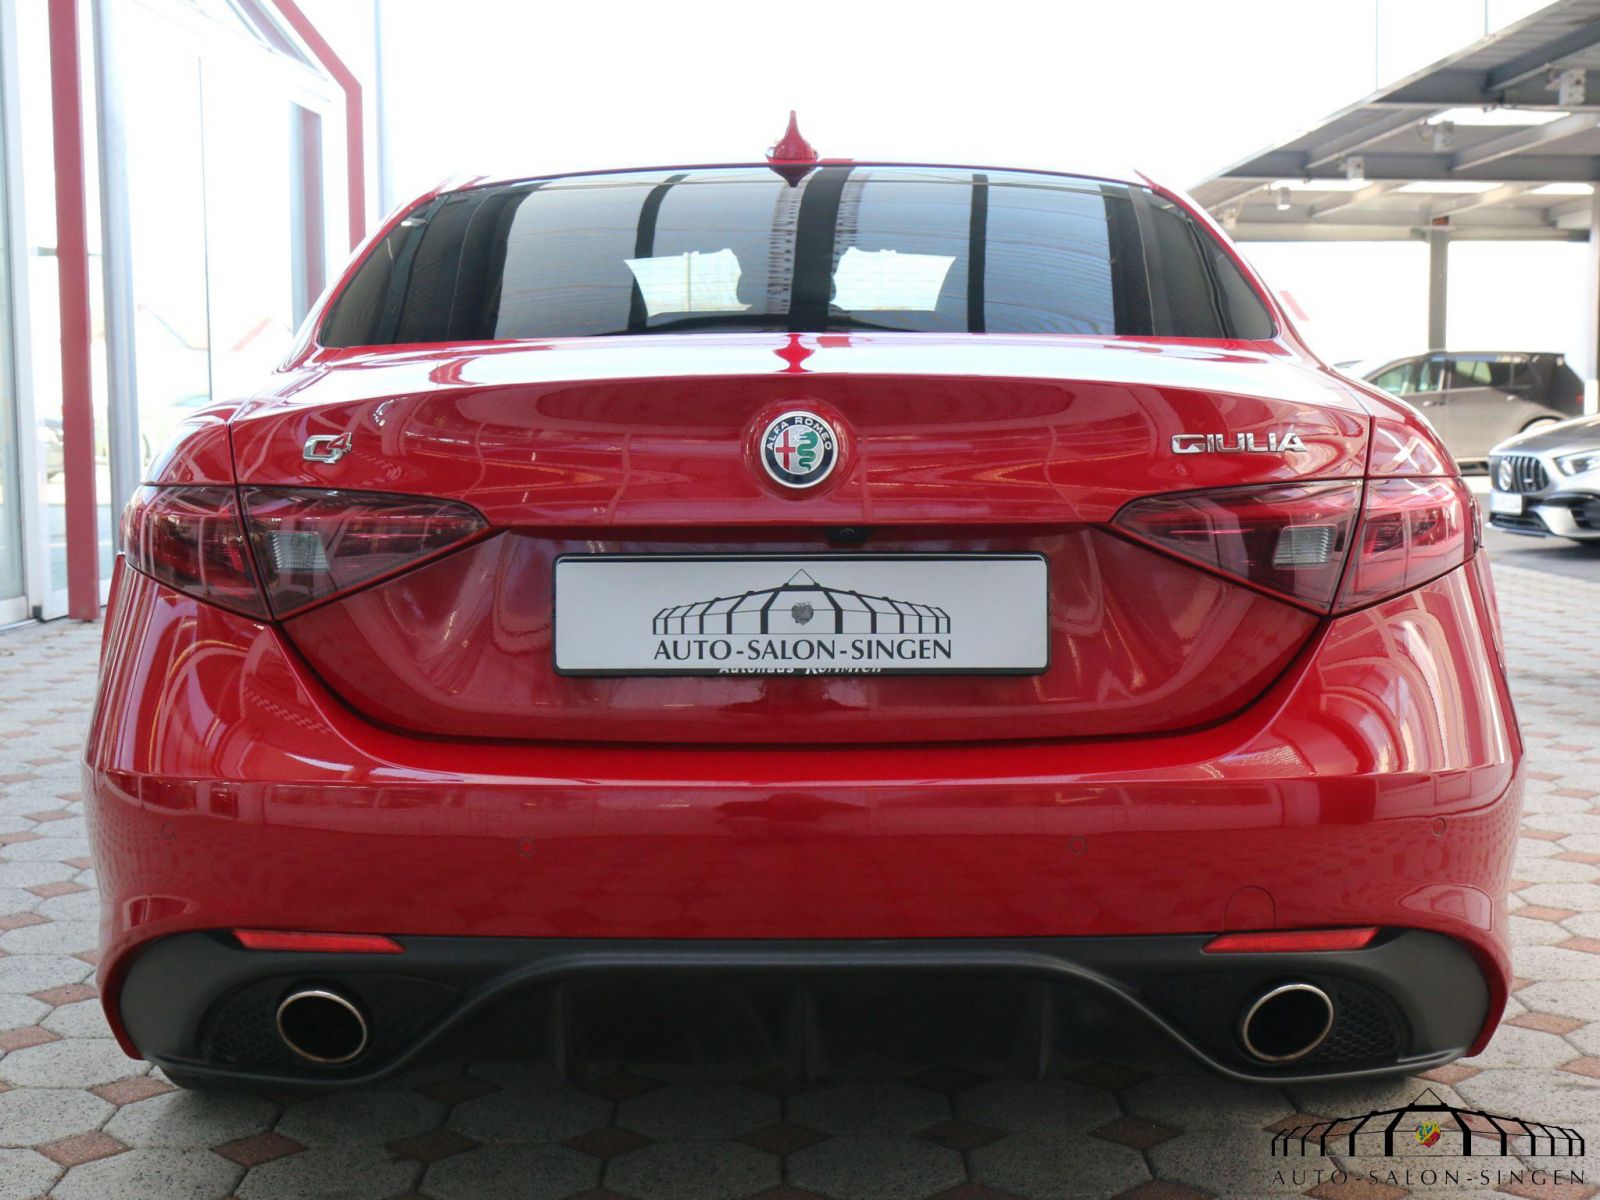 Schlüsselanhänger  Alfa Romeo rosso  - Autoersatzteile für Alfa Rom